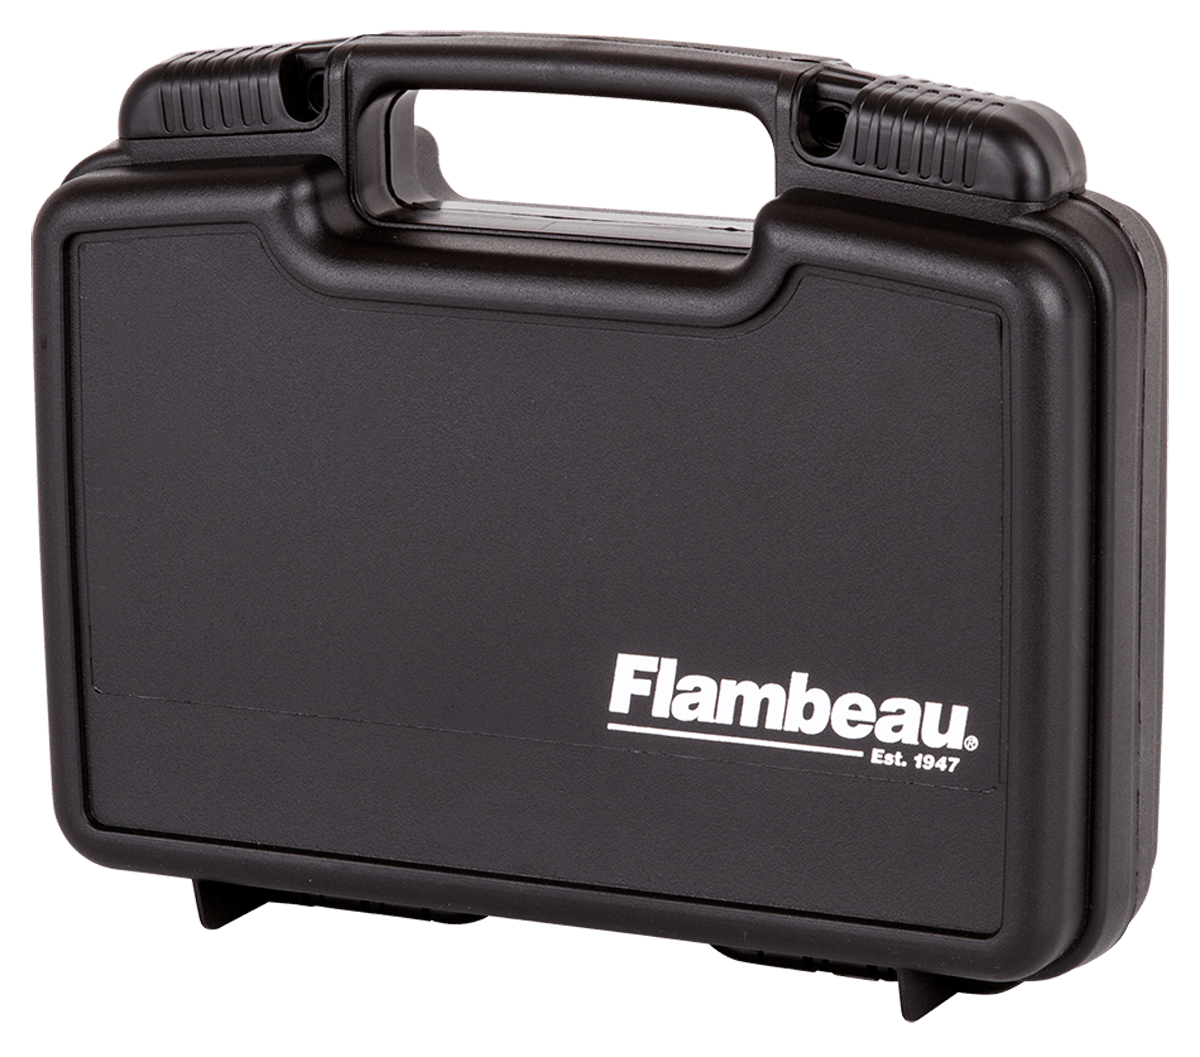 Flambeau Flambeau 1011 Pistol Case 10 In. Gun Storage